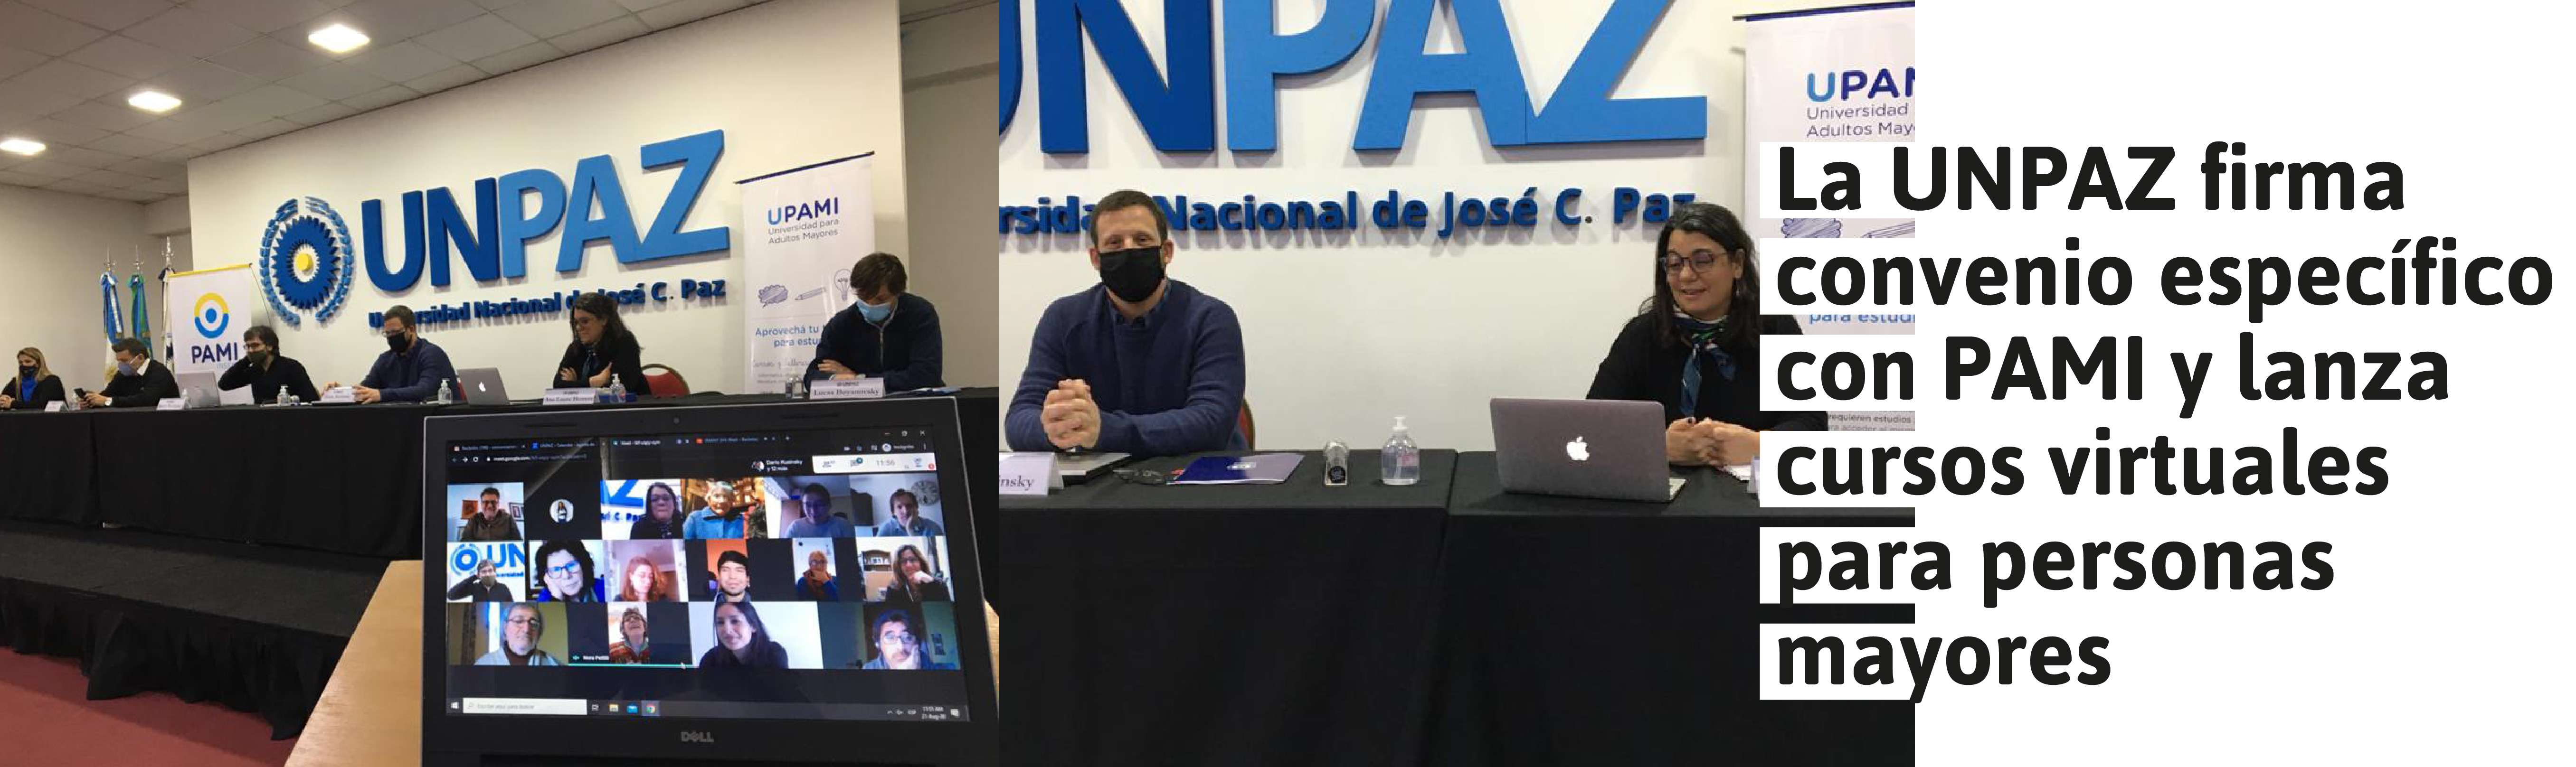 La UNPAZ firma convenio específico con PAMI y lanza cursos virtuales para adultos mayores